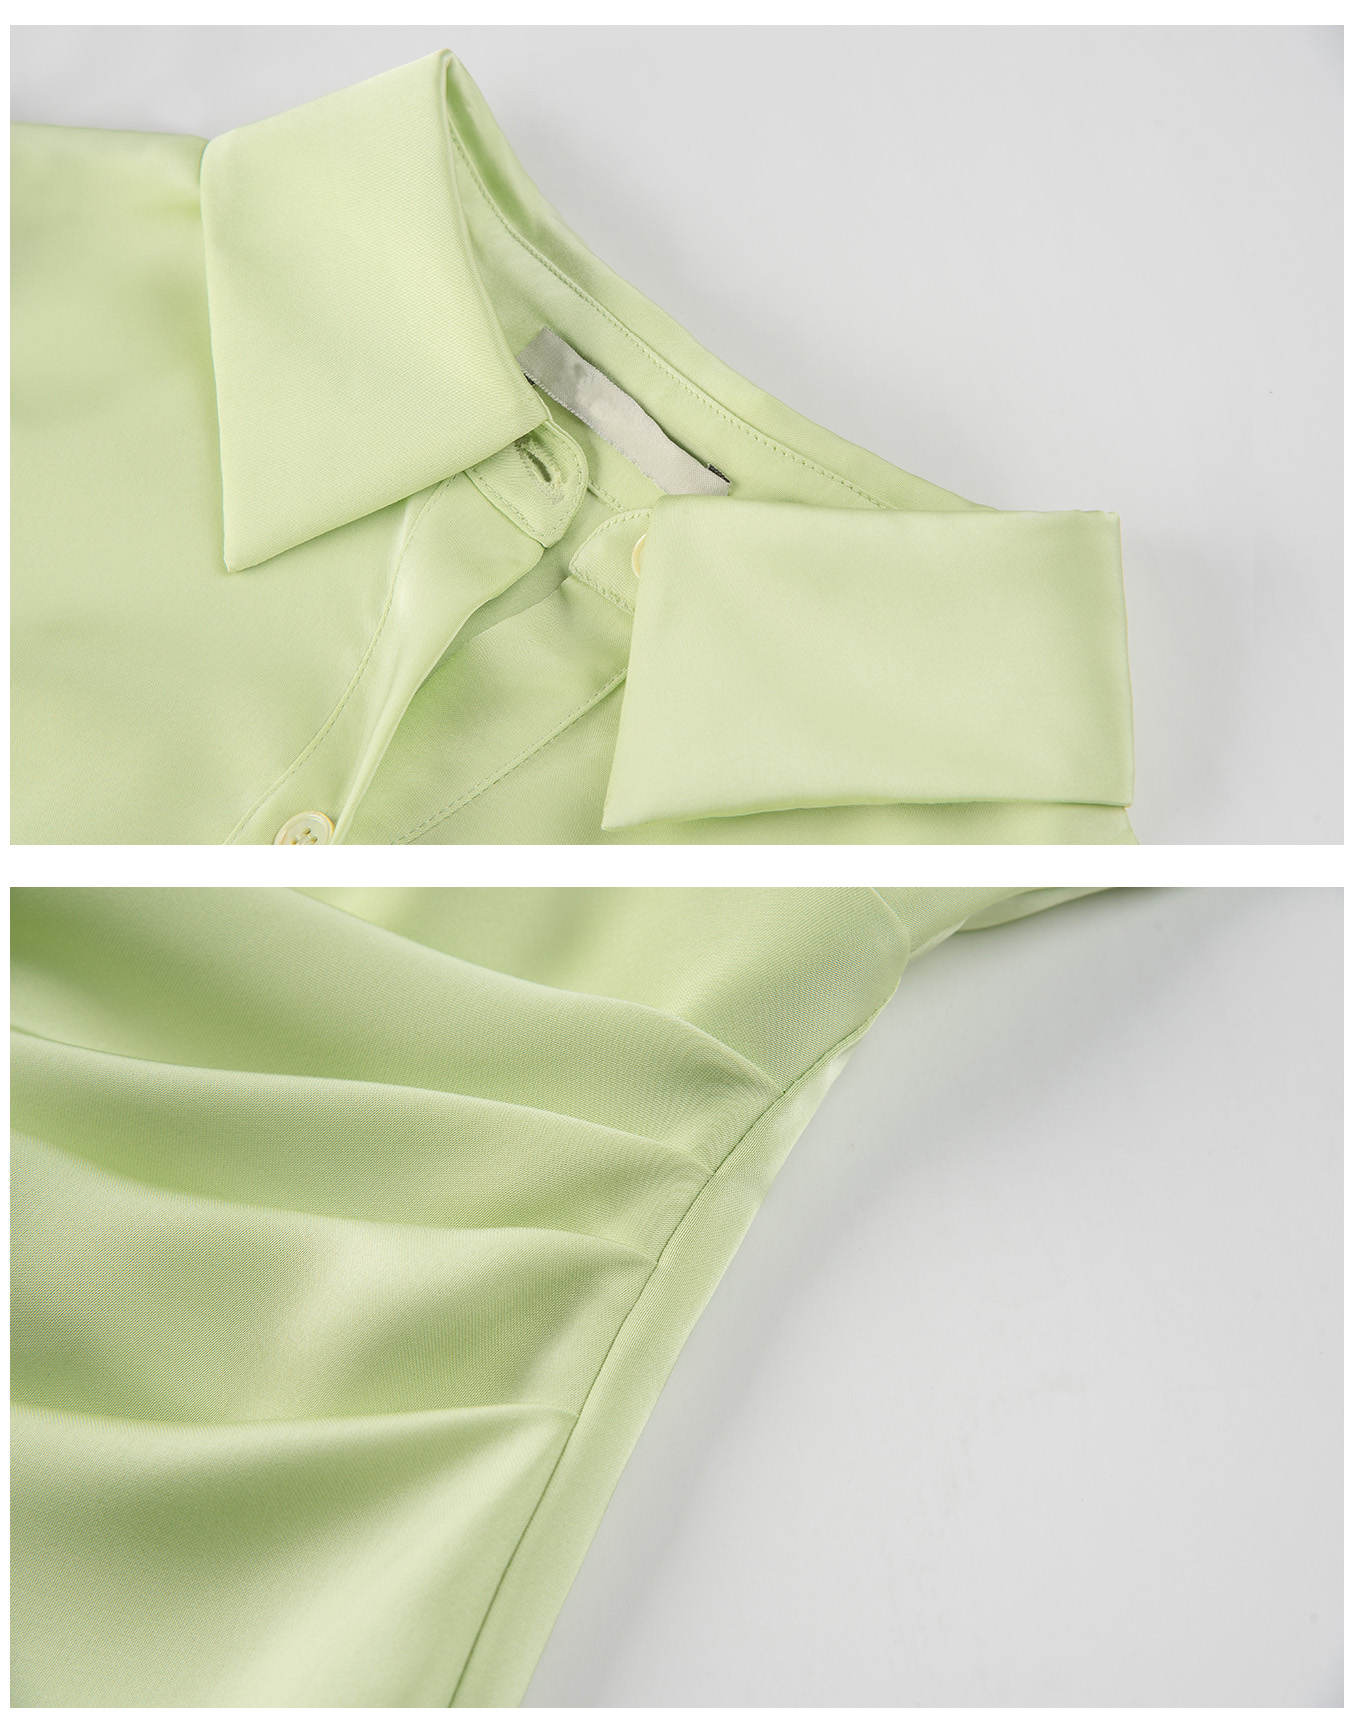 कस्टम अनियमित प्लीटेड ड्रेस साटन हाई कमर शर्ट ड्रेस महिला (1)